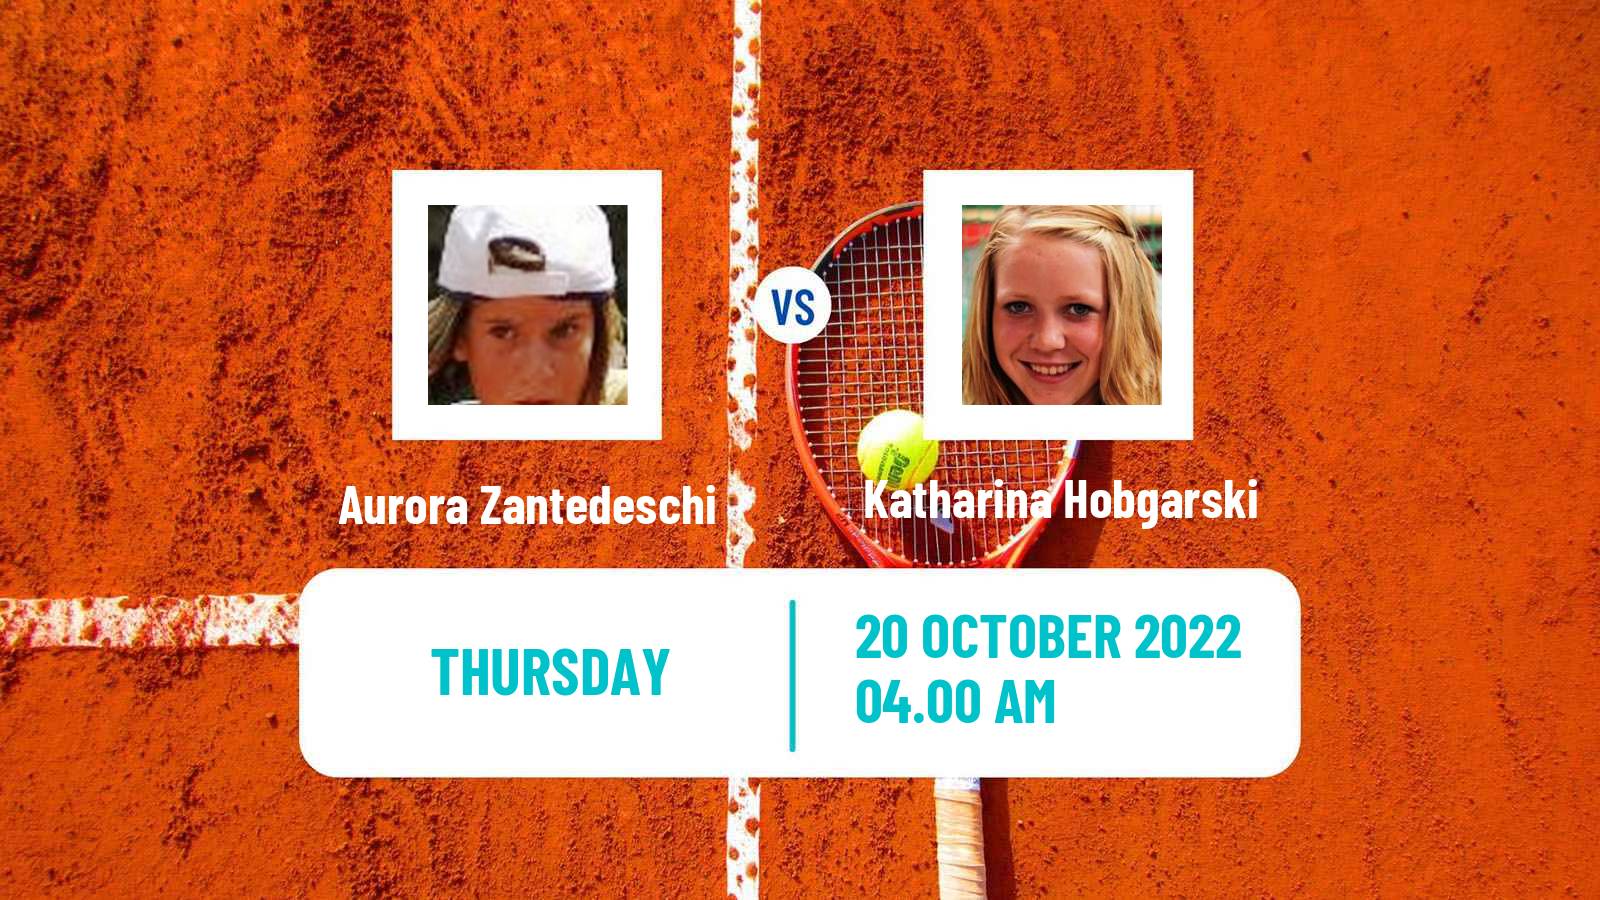 Tennis ITF Tournaments Aurora Zantedeschi - Katharina Hobgarski